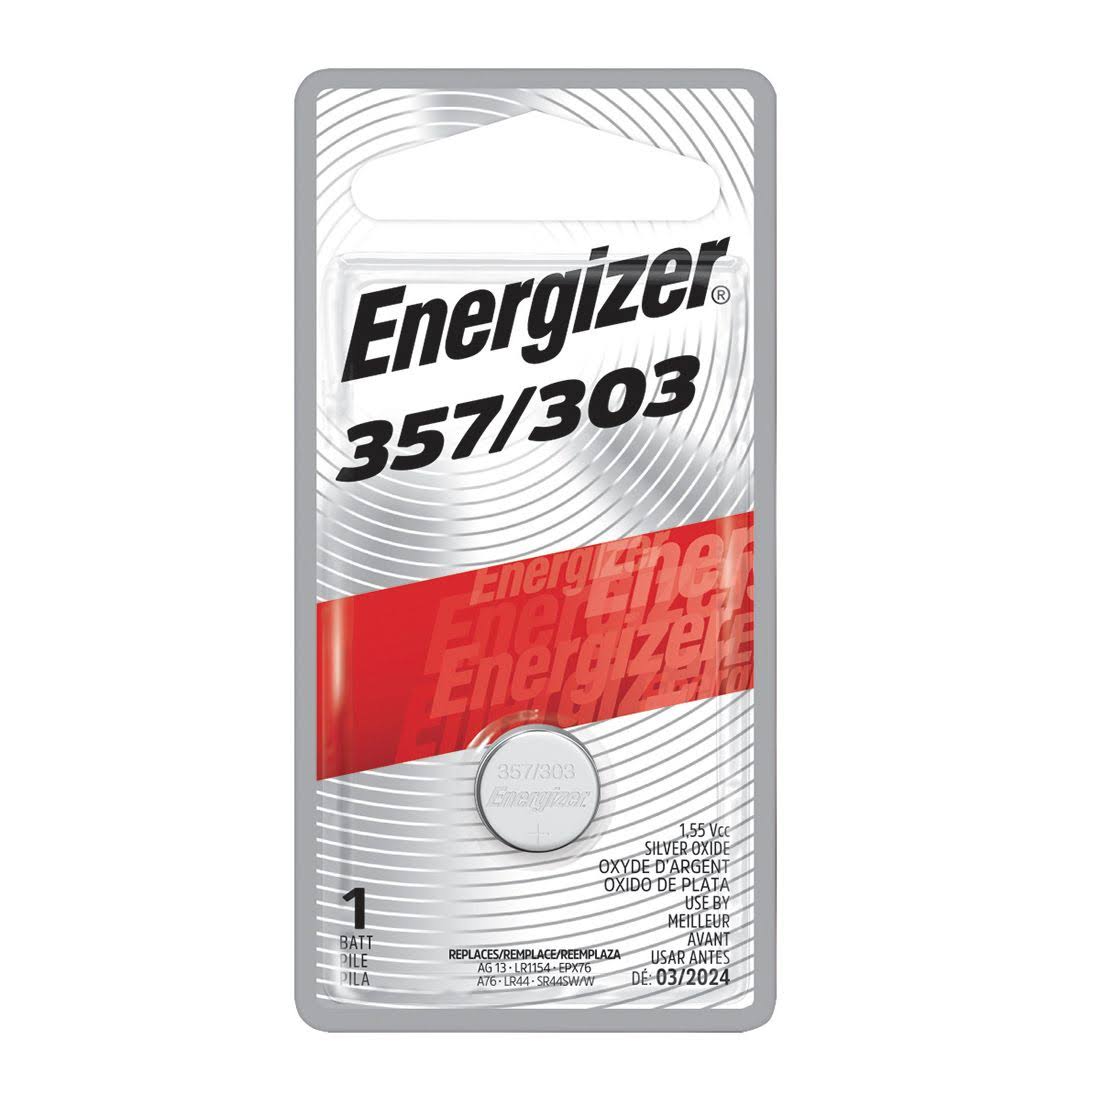 Energizer Silver Oxide 357 303 Battery - 1.5V